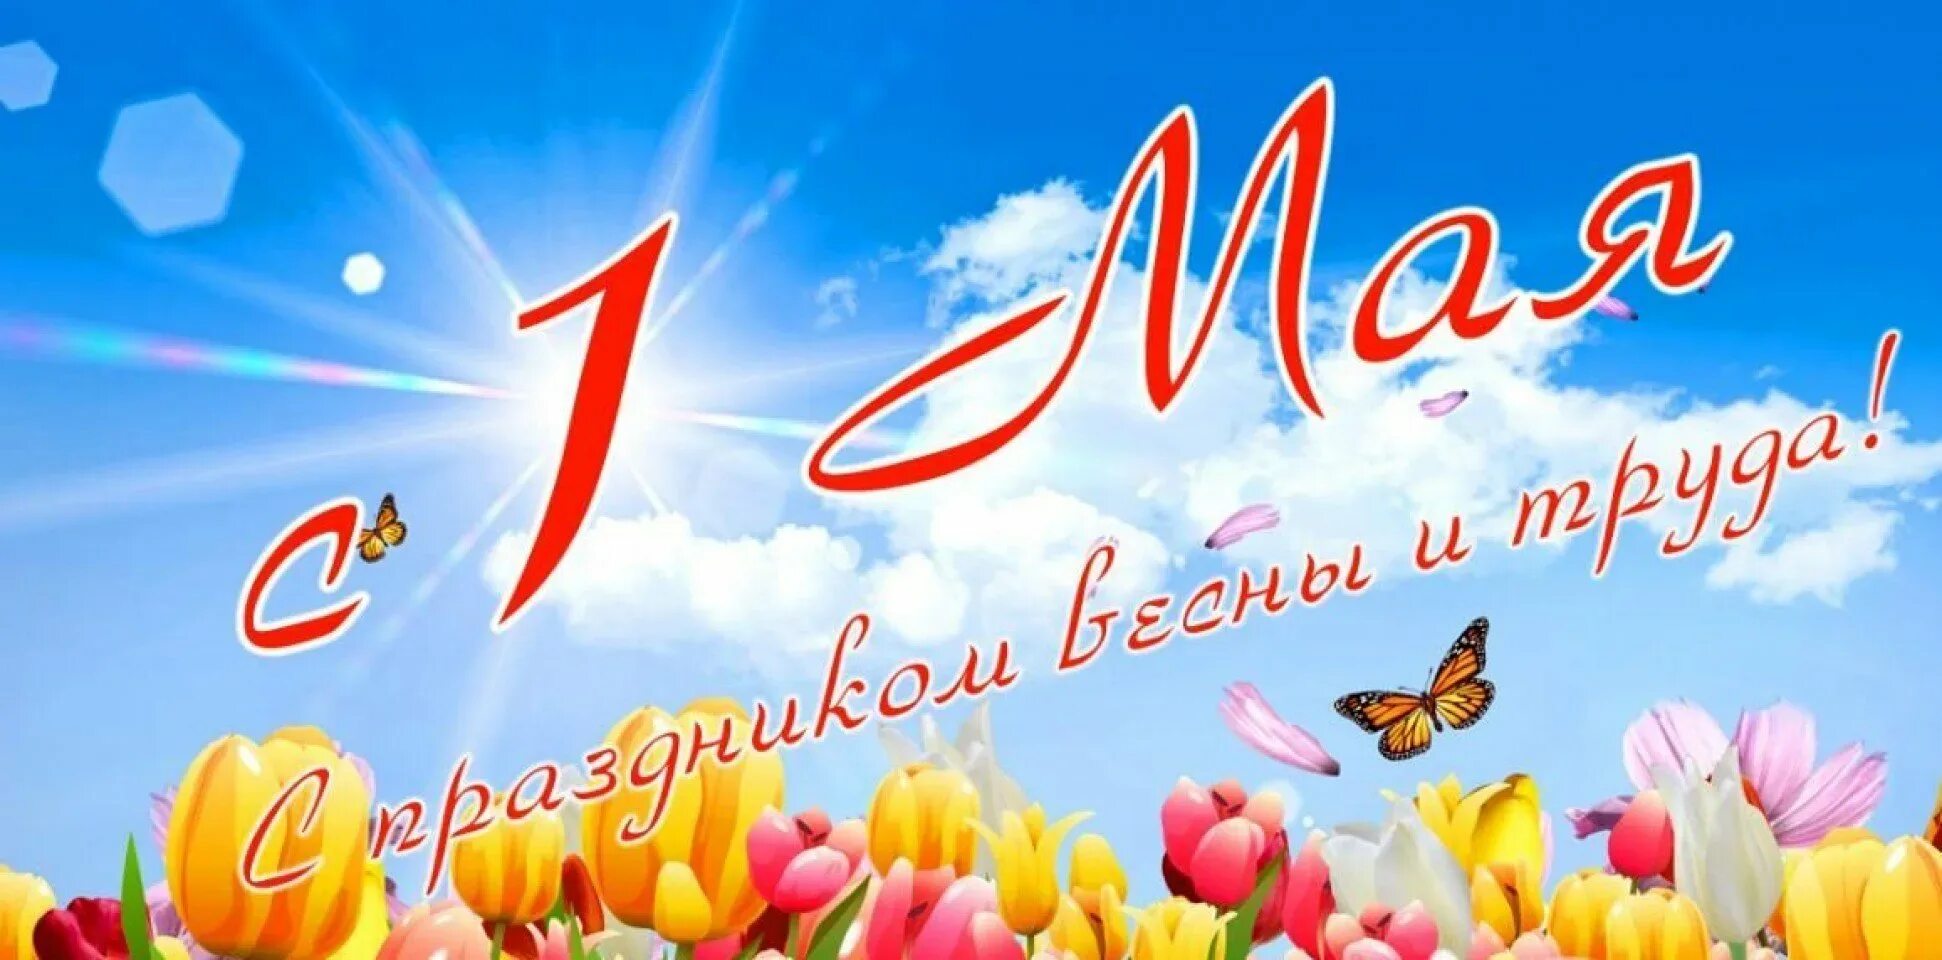 1 мая 2020 г. 1 Мая. 1 Мая праздник весны и труда. Поздравление с 1 мая. 1 Мая праздник.